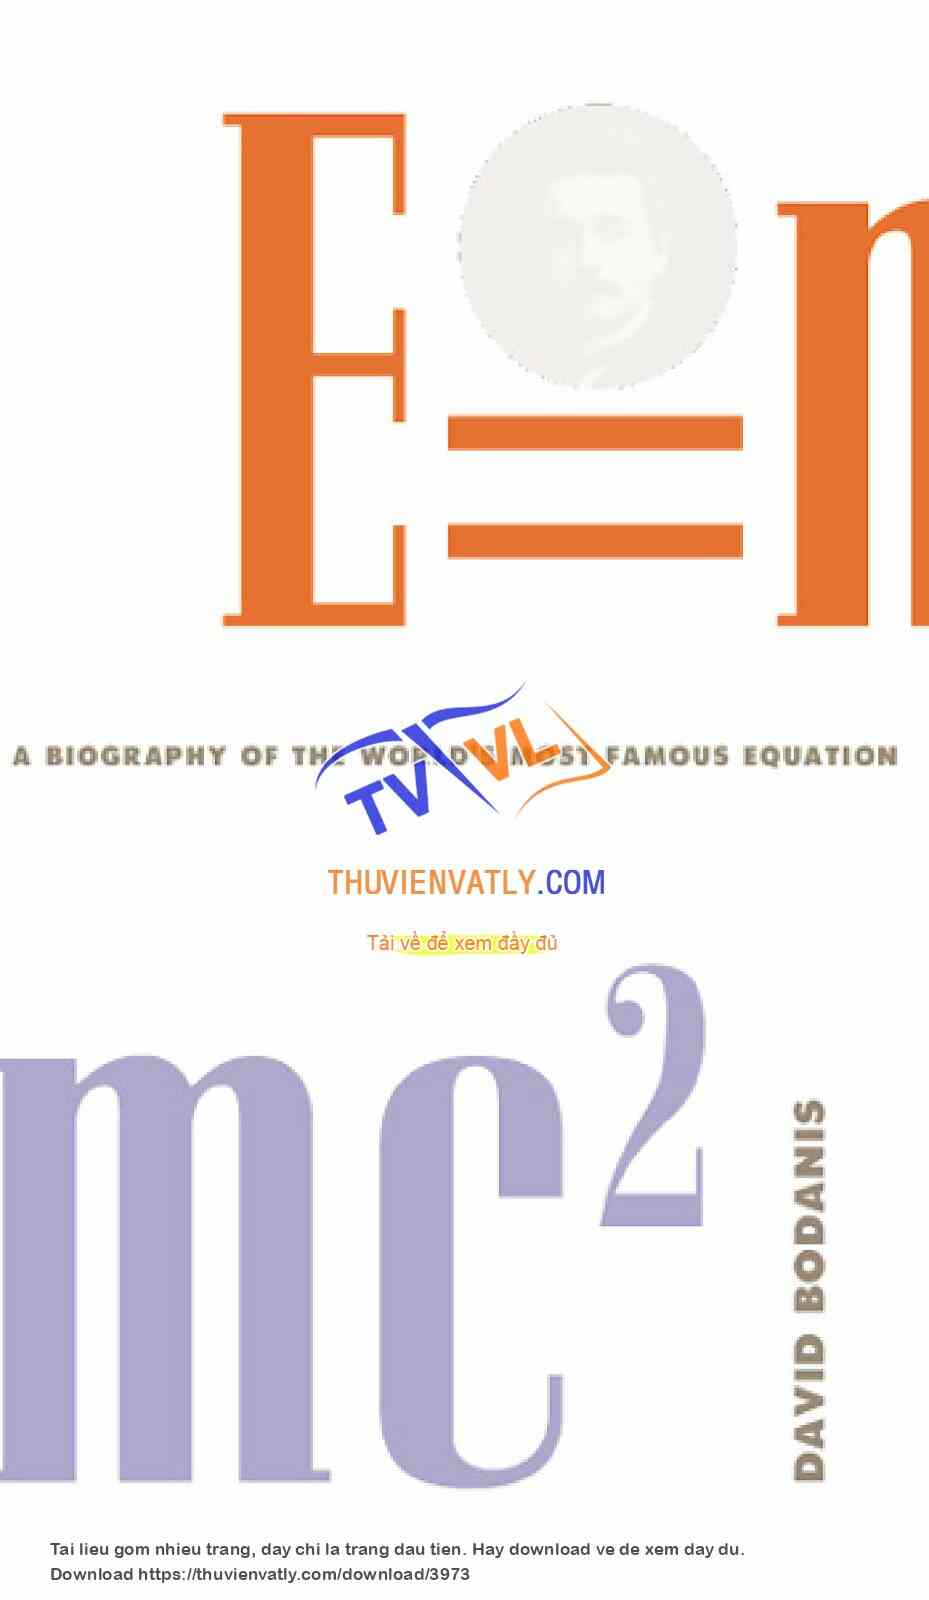 E = mc²: A Biography of the World